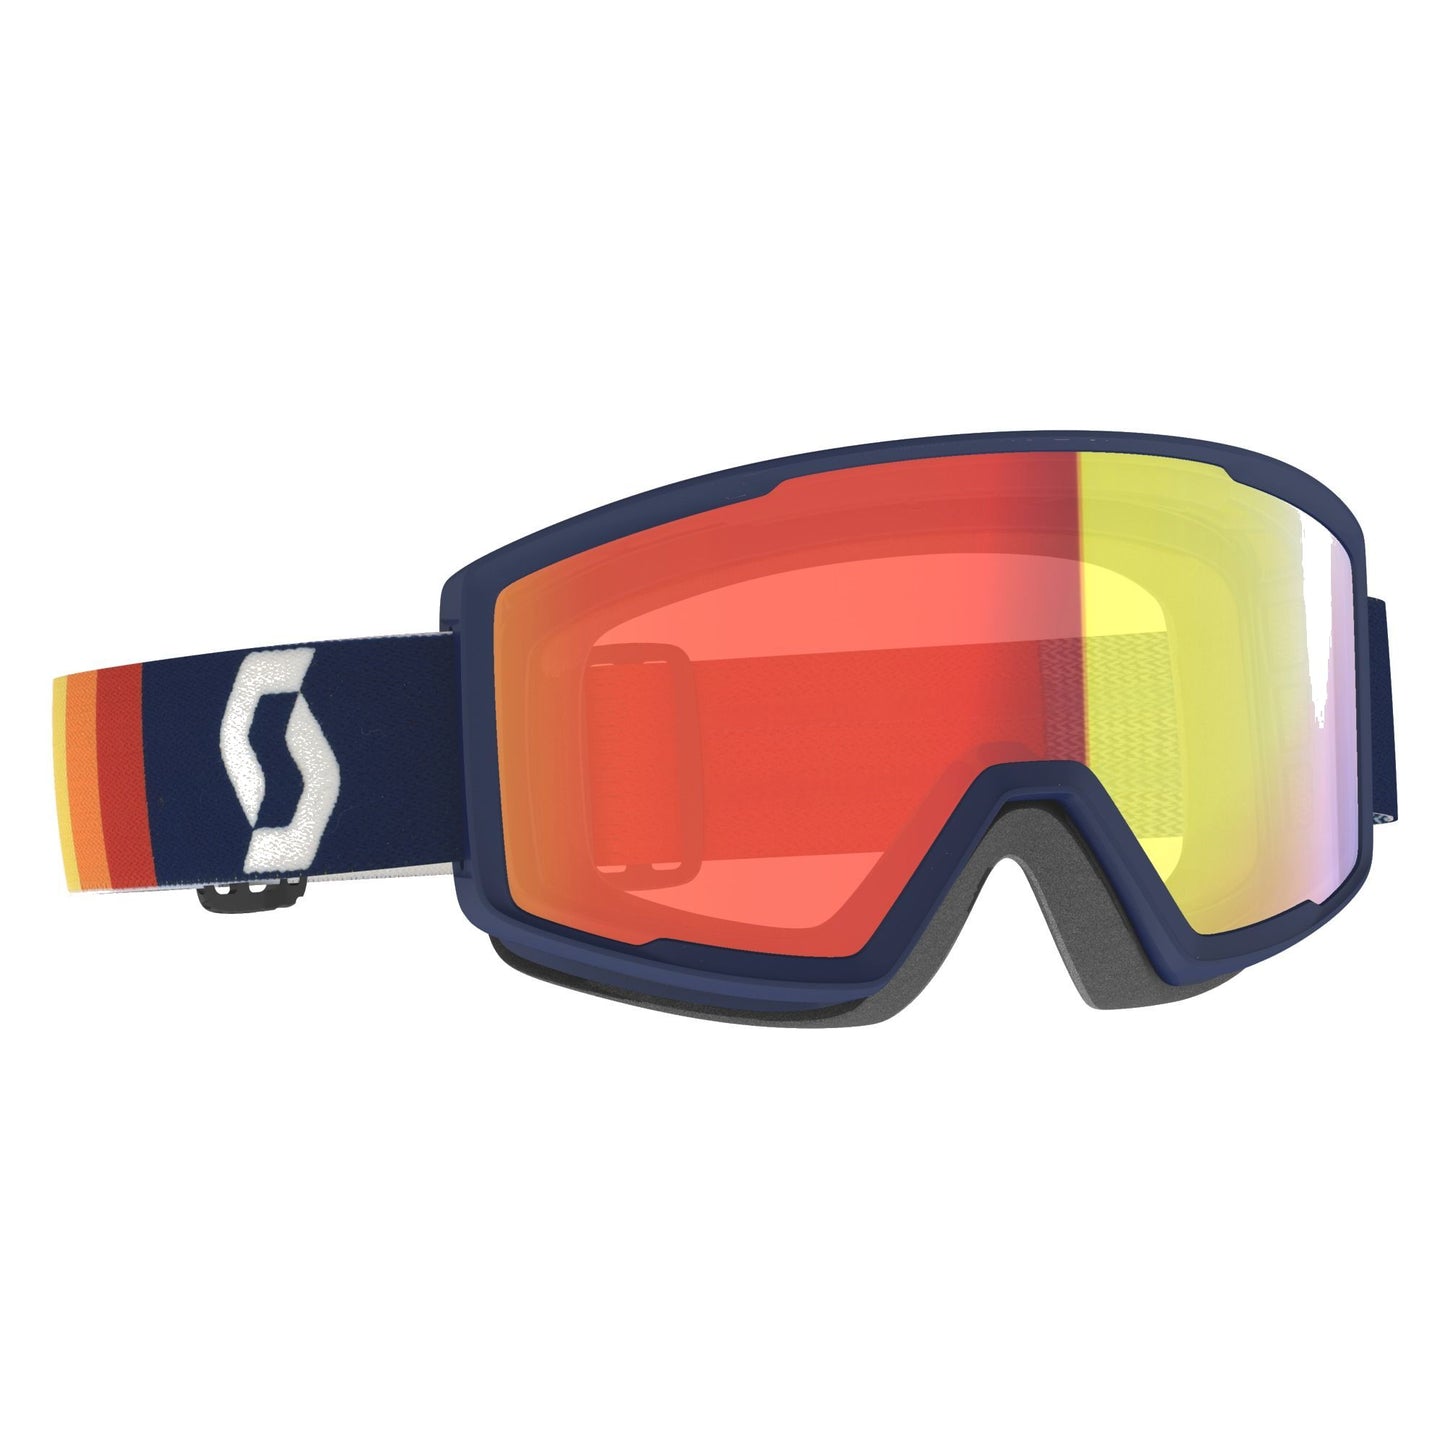 Scott Factor Pro Snow Goggle Retro Blue Enhancer Red Chrome Snow Goggles